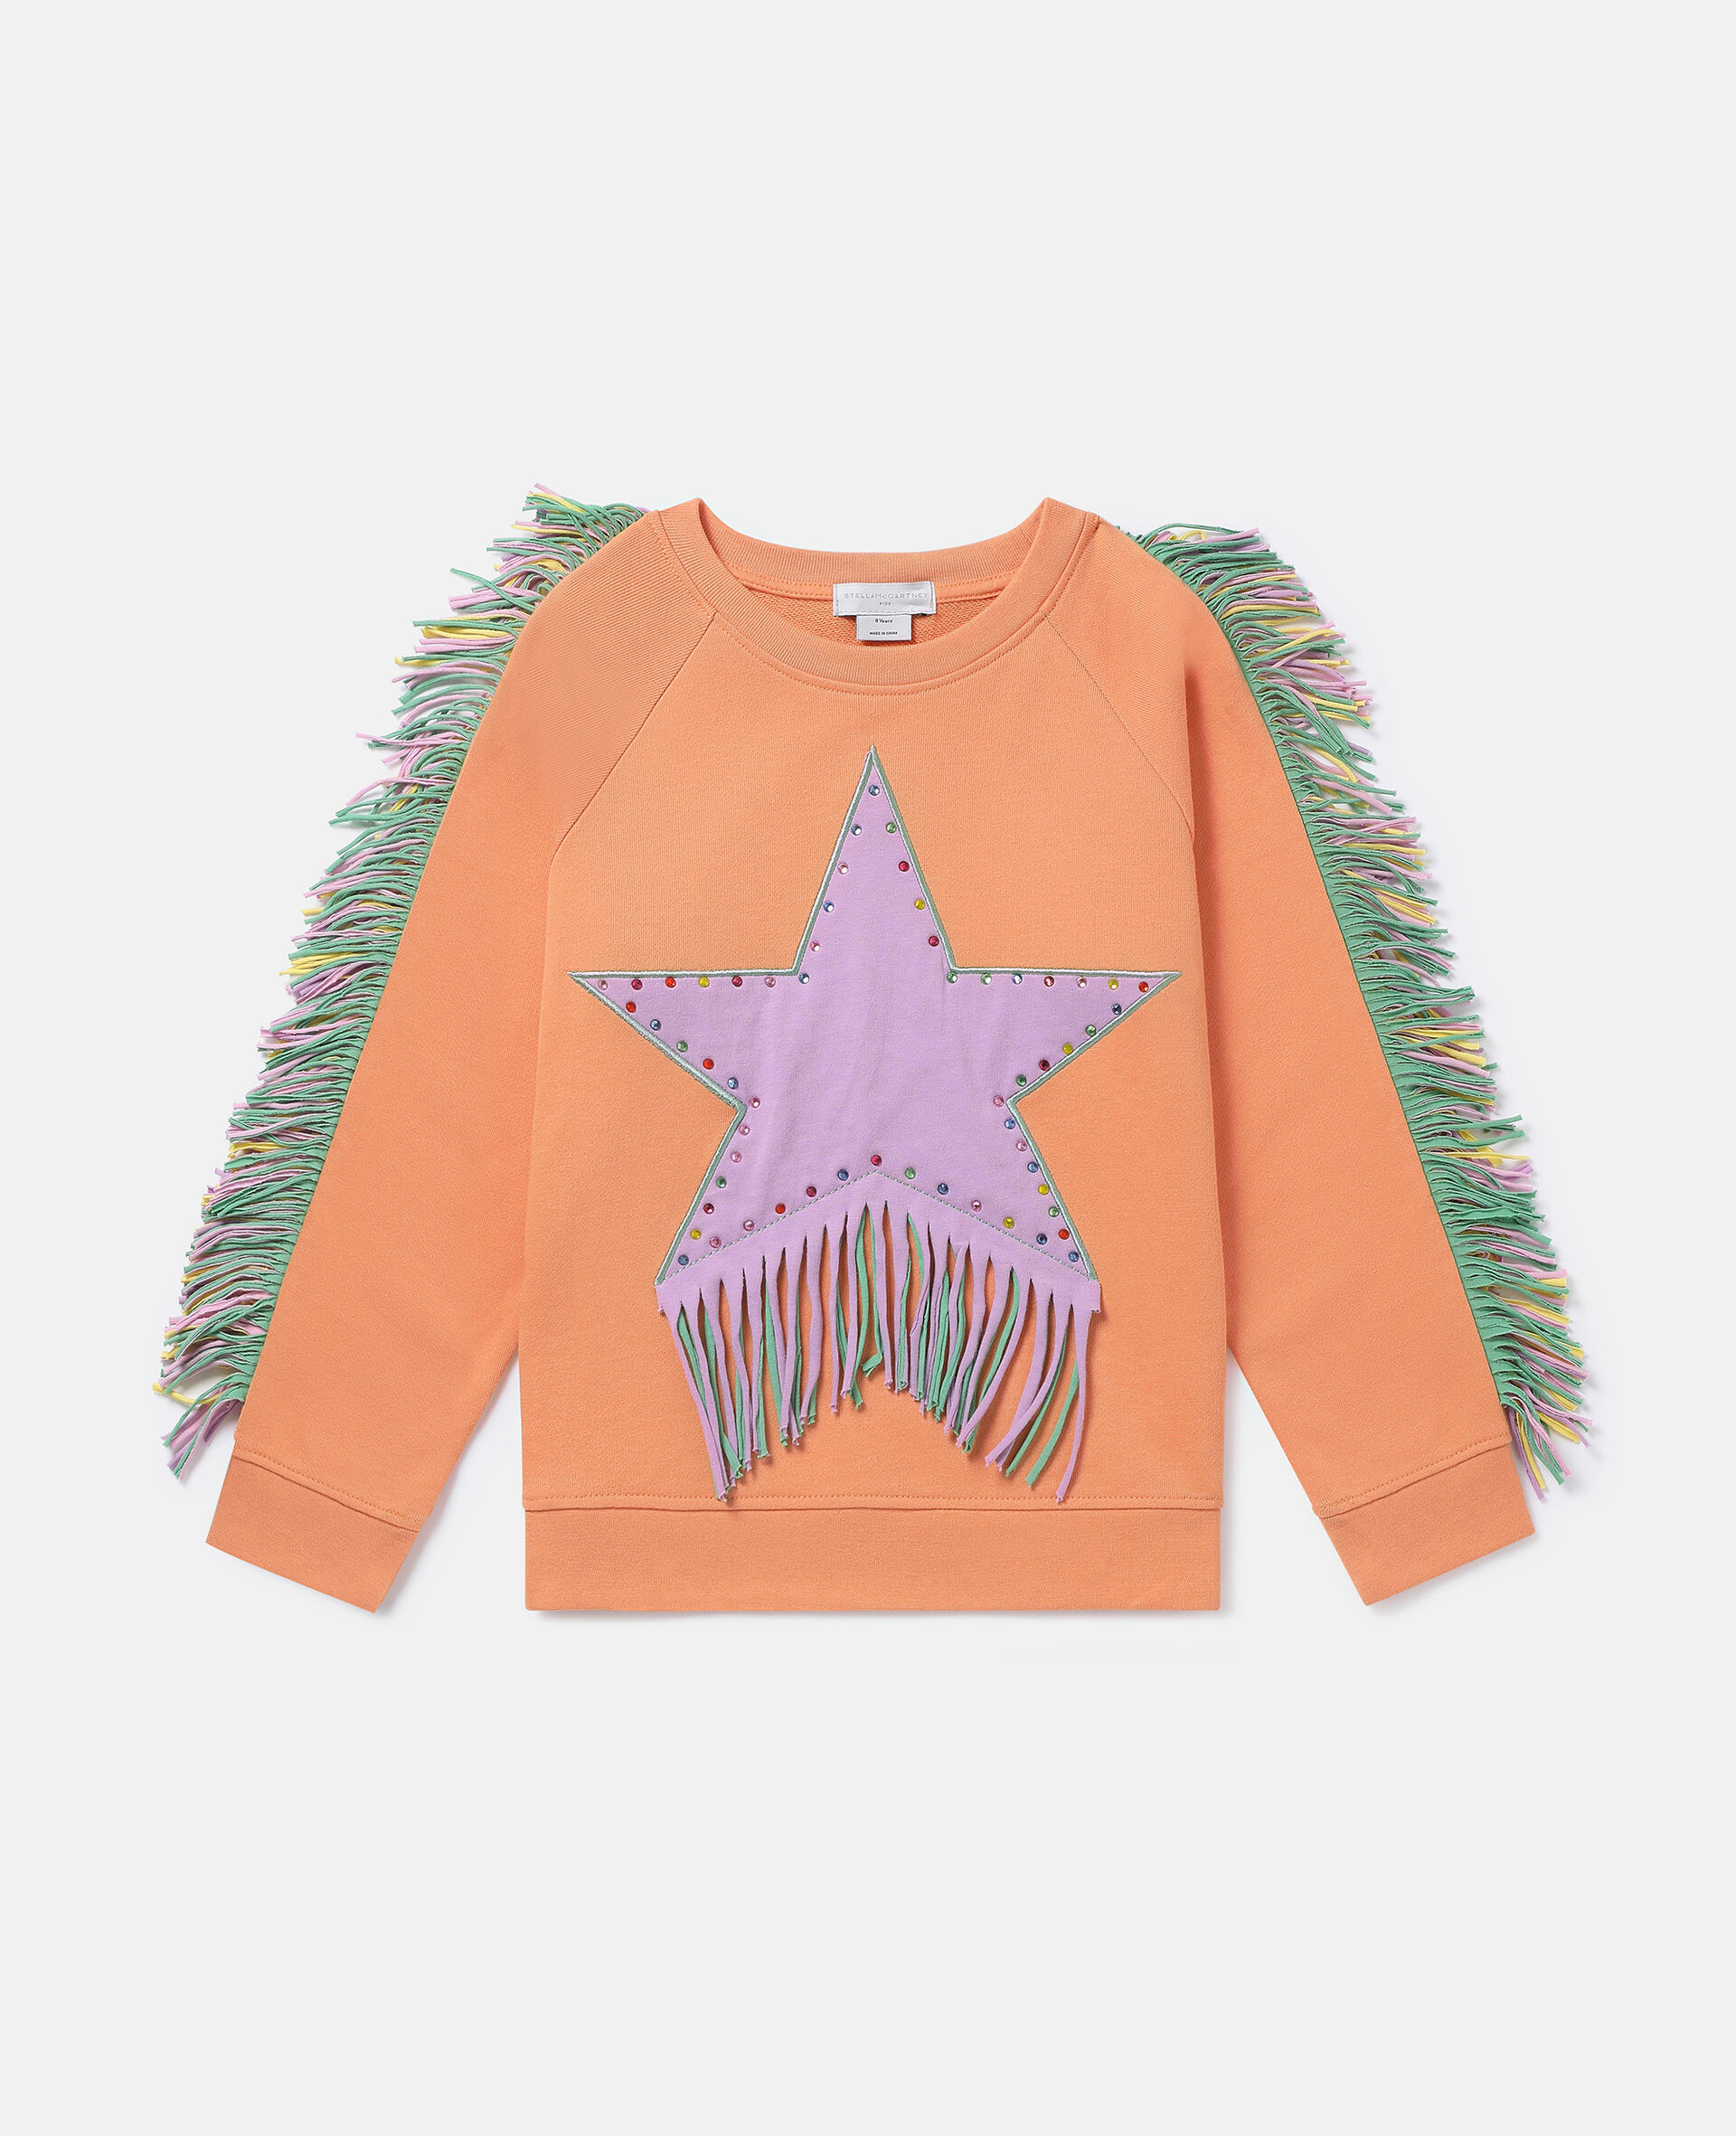 Fringed Star Sweatshirt-Orange-large image number 0